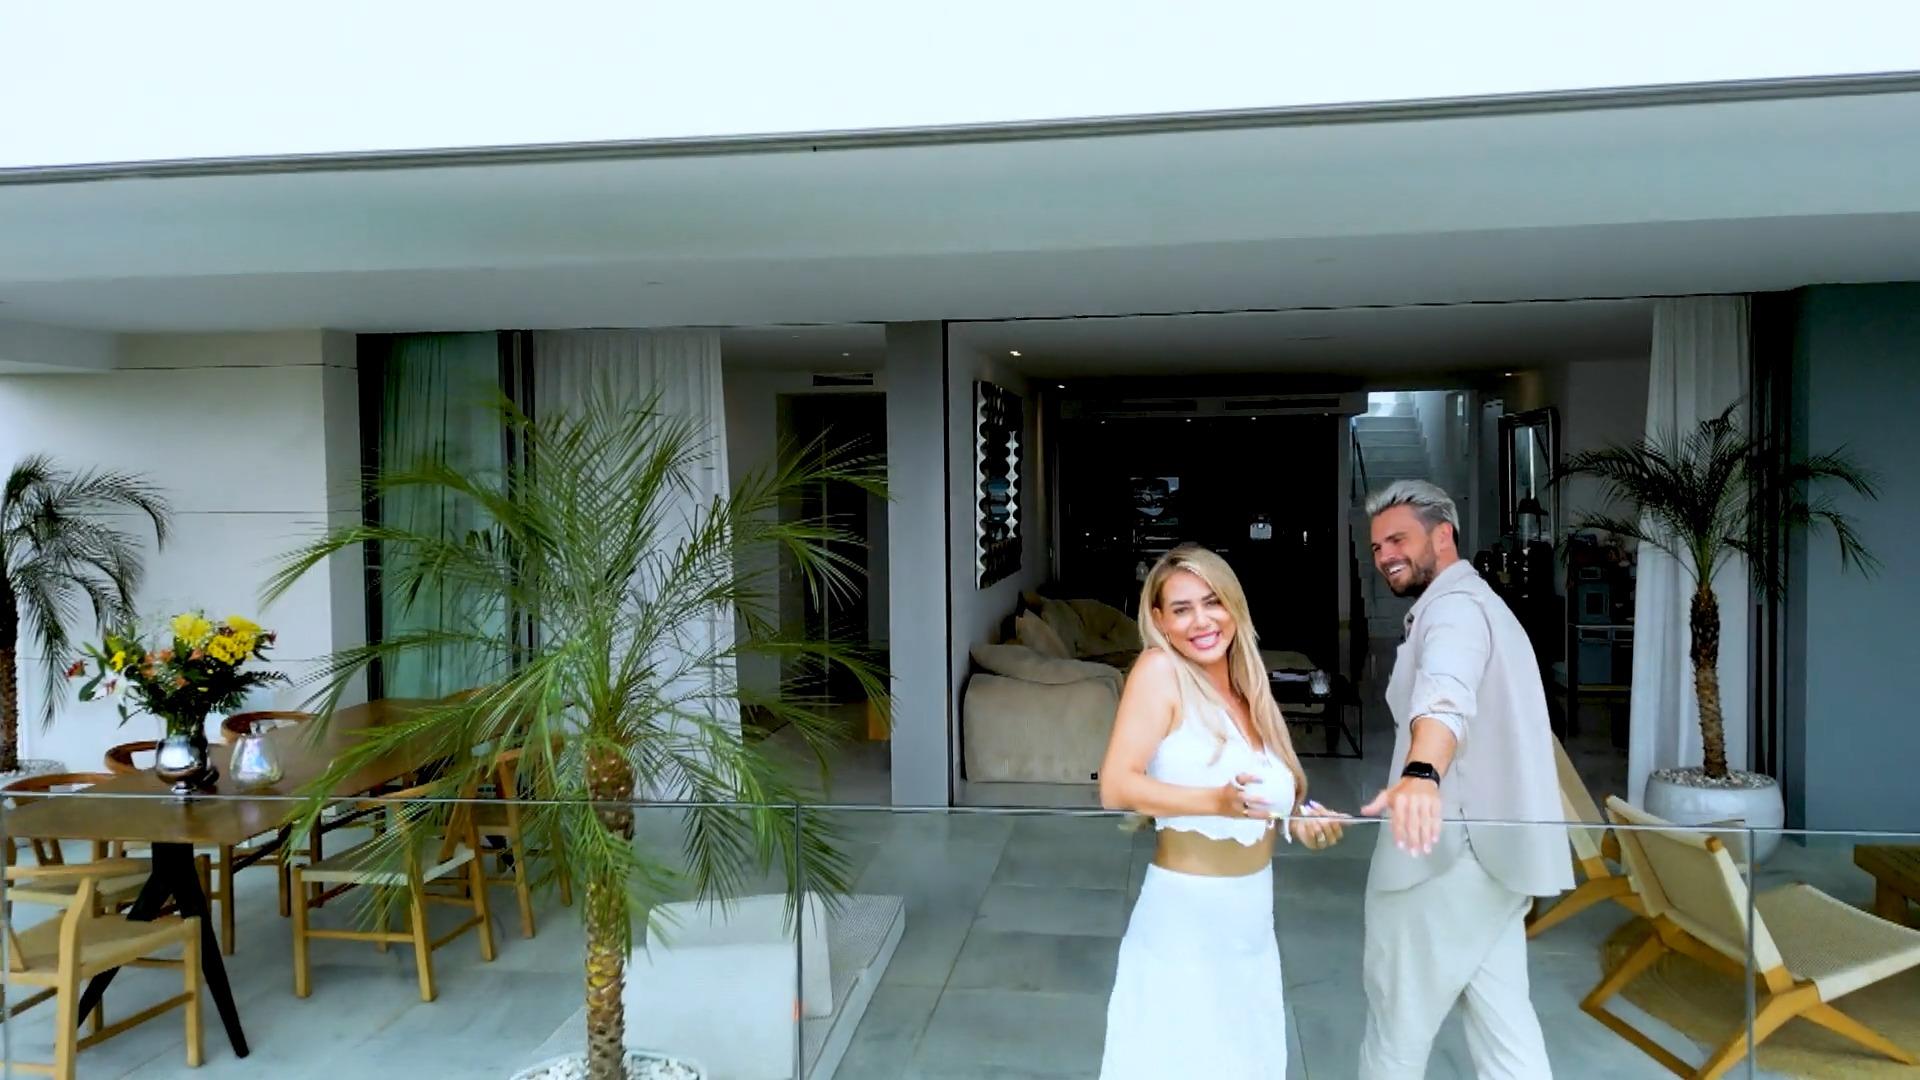 Jessica und Johannes Haller zeigen ihr neues Heim auf Ibiza Emotionale Room-Tour nach Haus-Einbruch